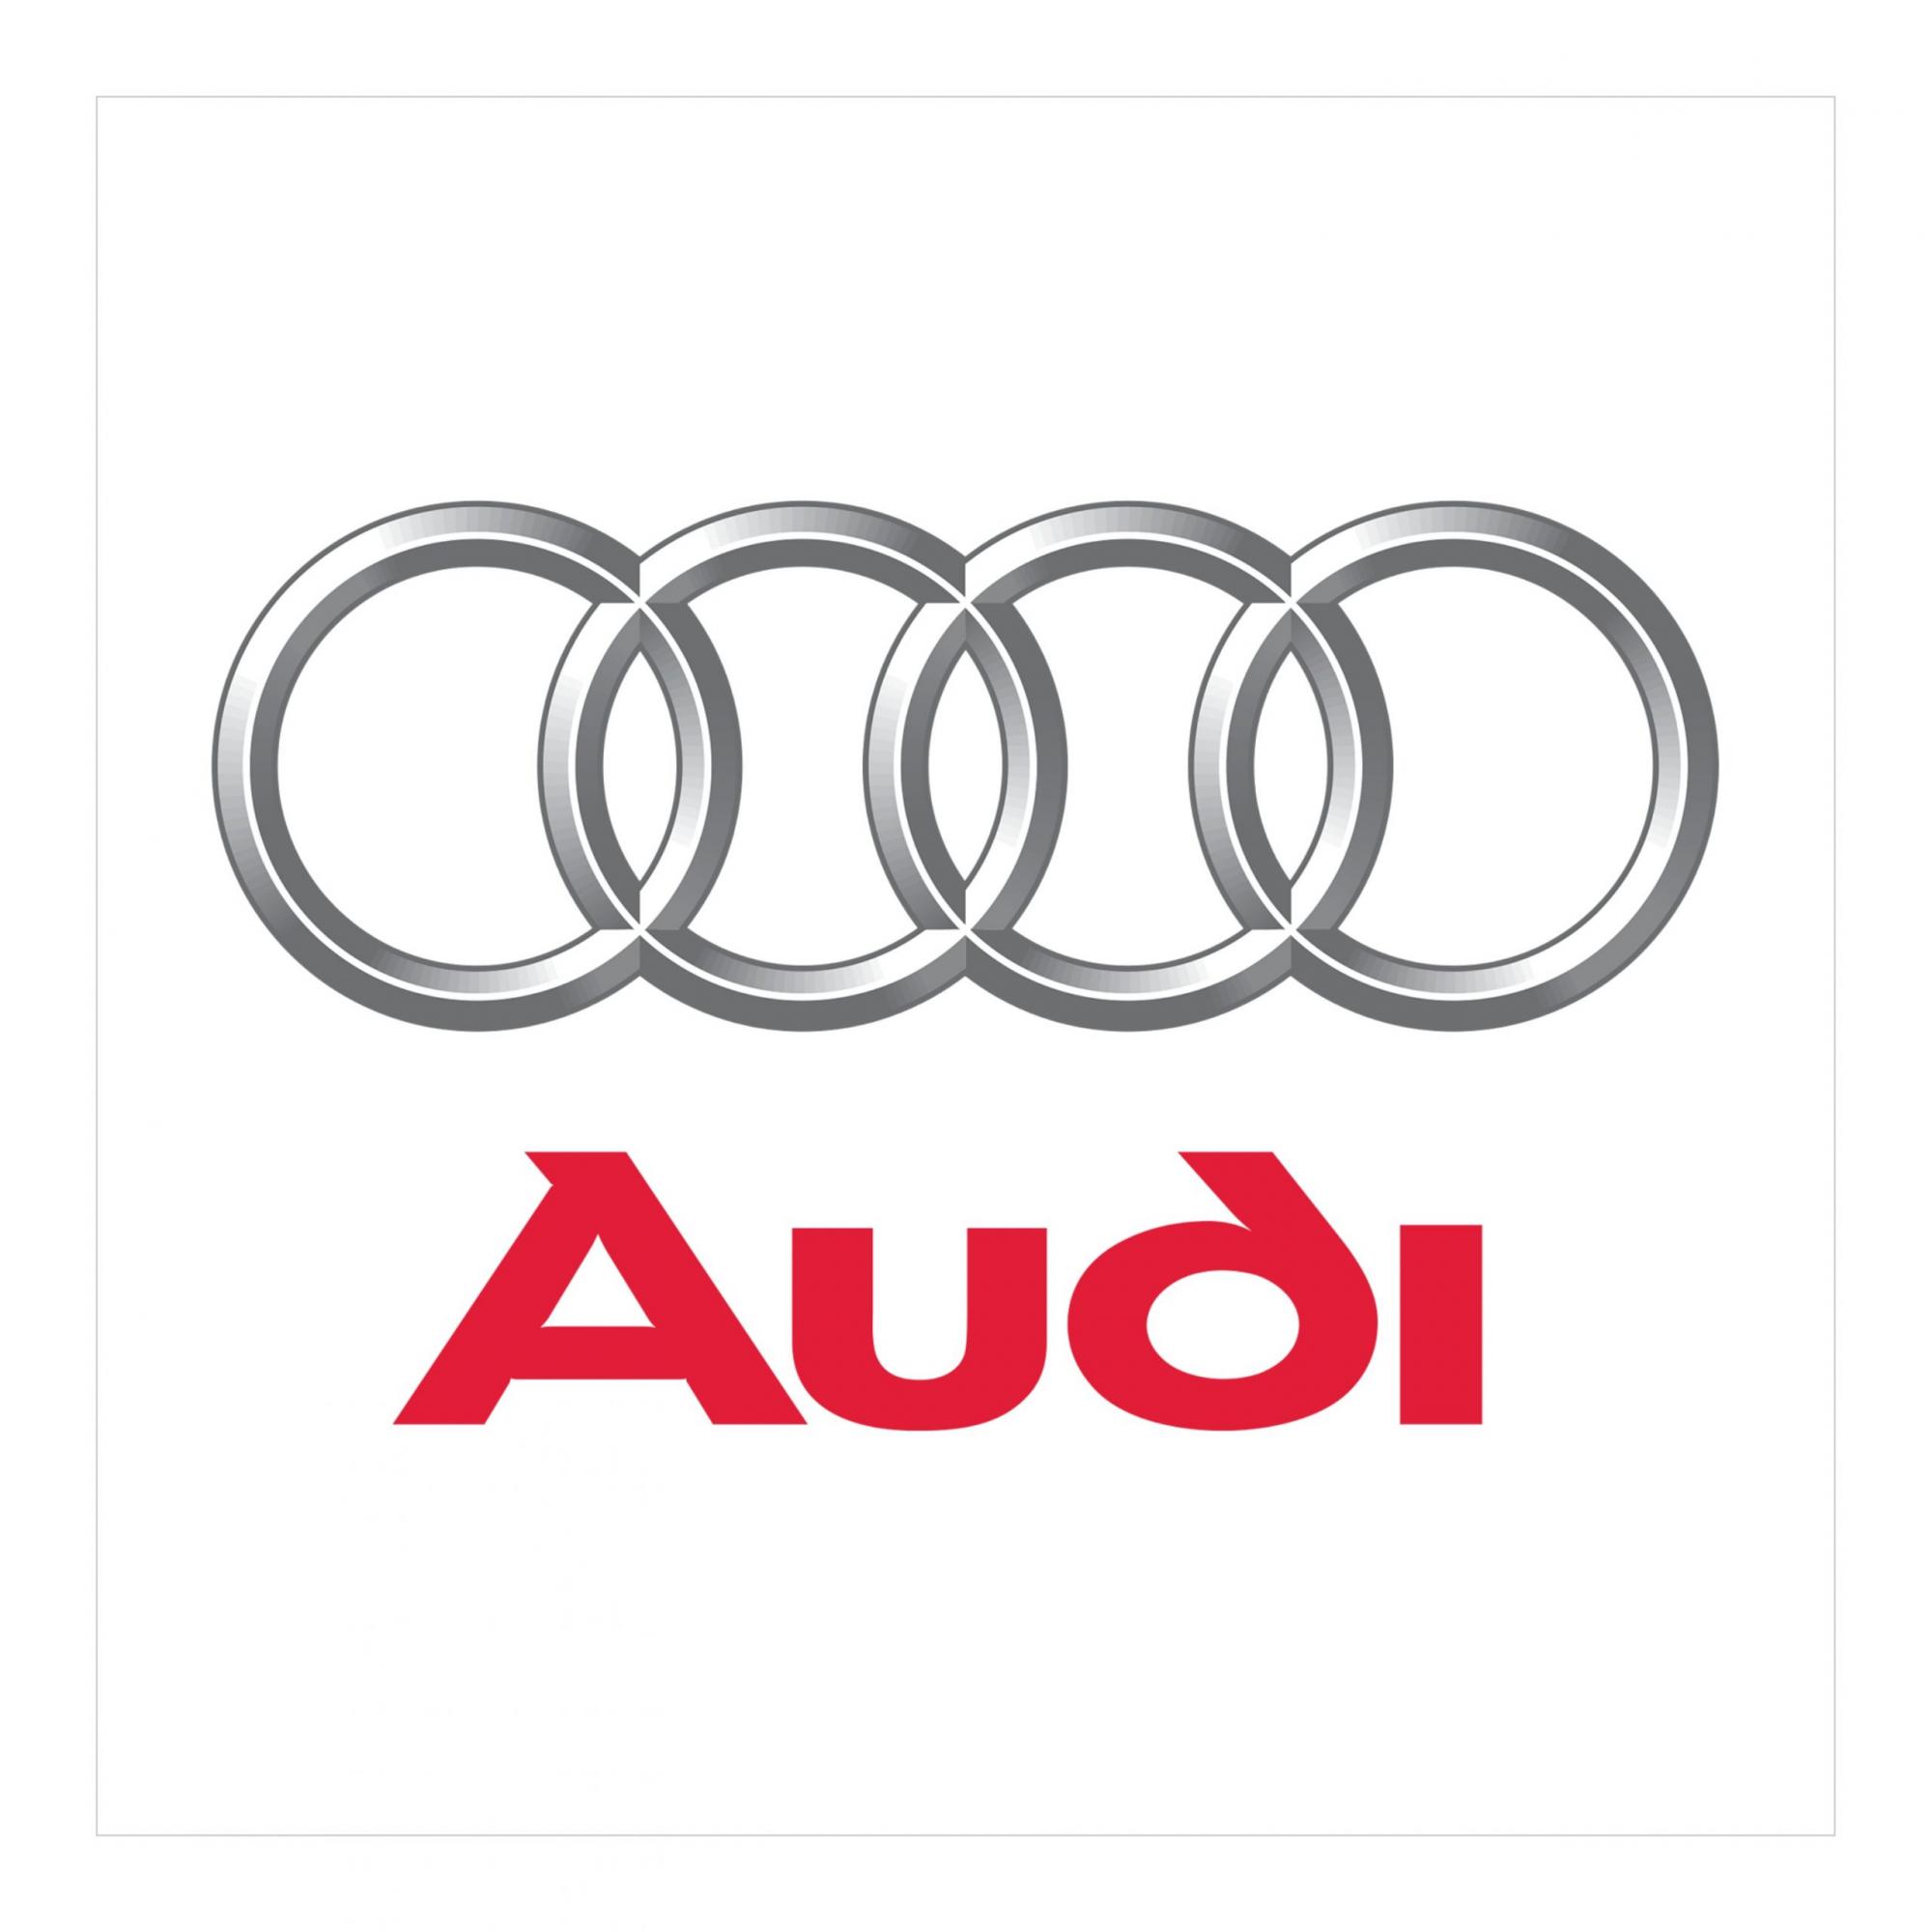 ТОО MERCUR AUTOS  - официальный импортер Audi в Казахстане. Осуществляет продажу, техническое и сервисное обслуживание Audi. Также компания предоставляет выгодные условия кредитования и систему trade-in.
